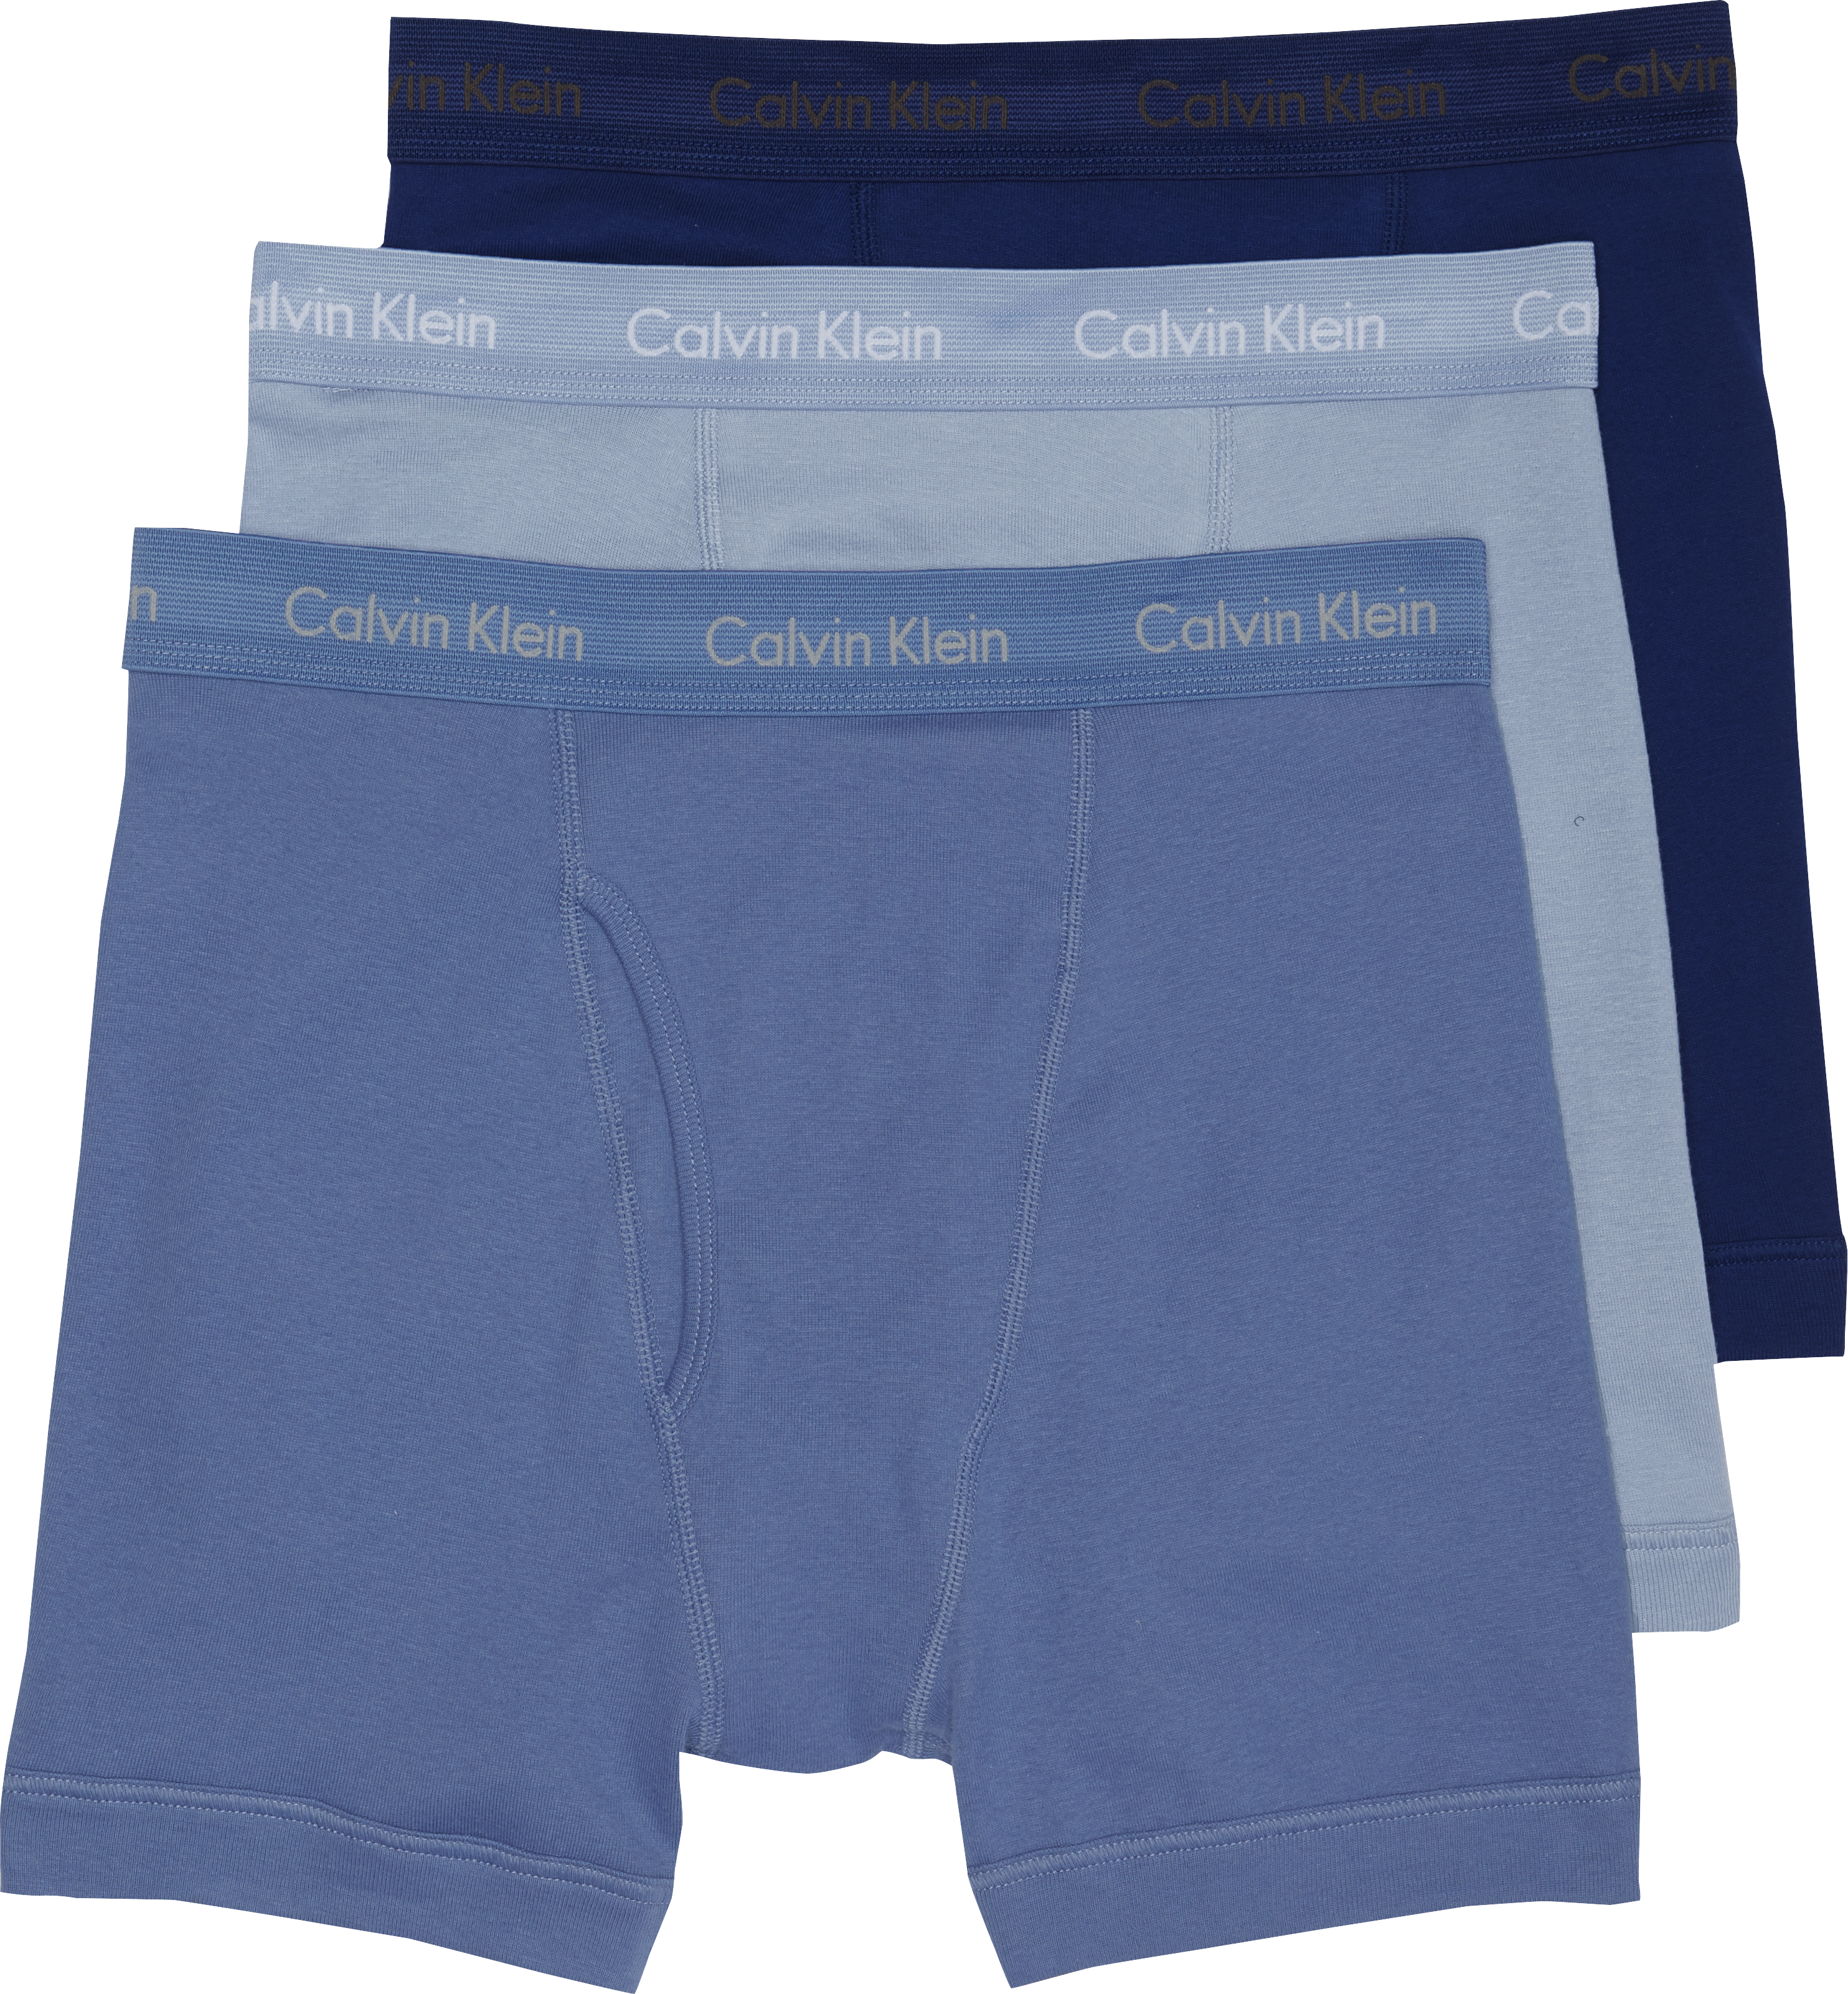 calvin klein men's underwear classic briefs 3 pack